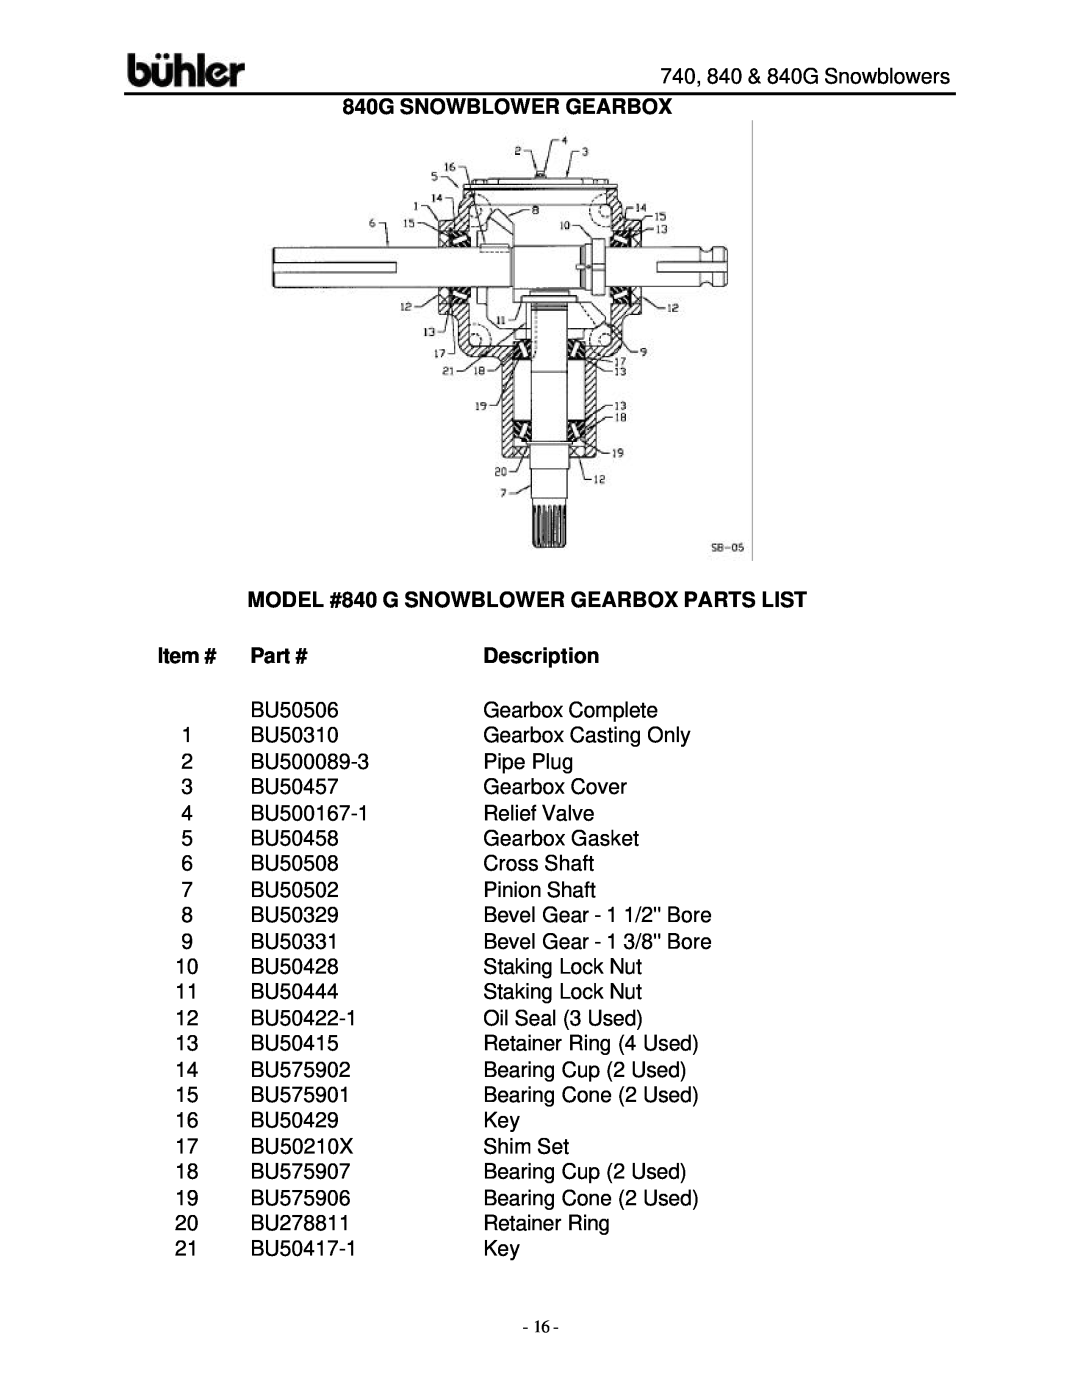 Buhler FK313, FK314 warranty 840G SNOWBLOWER GEARBOX, MODEL #840 G SNOWBLOWER GEARBOX PARTS LIST, Description, Item # 